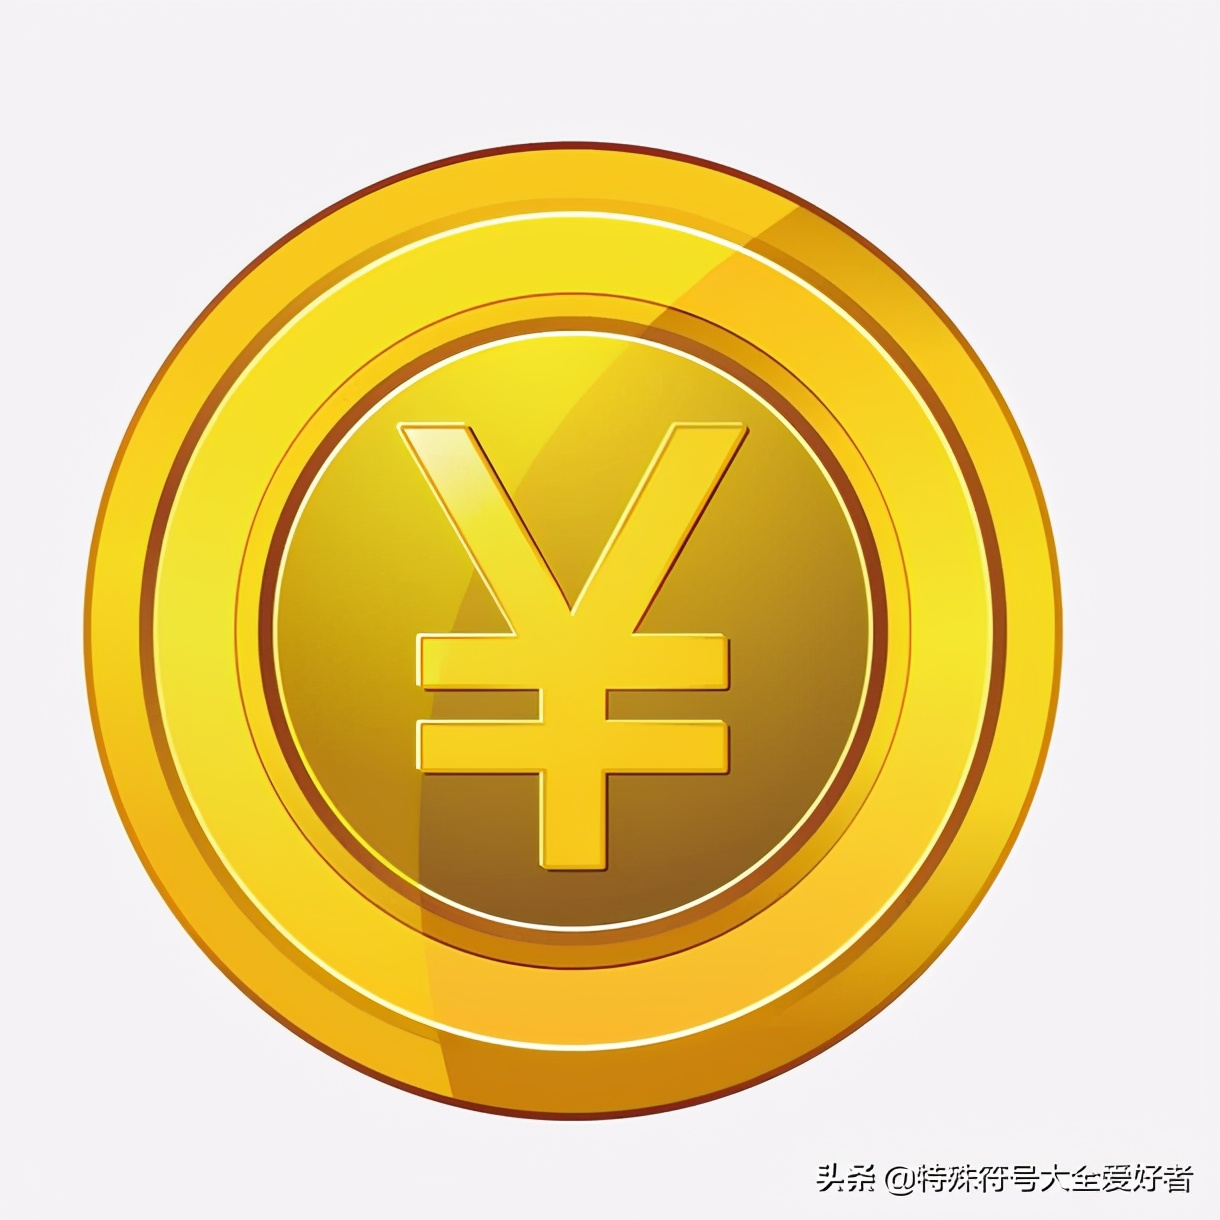 人民币的符号是什么，为什么会将人民币符号设计成这种图案